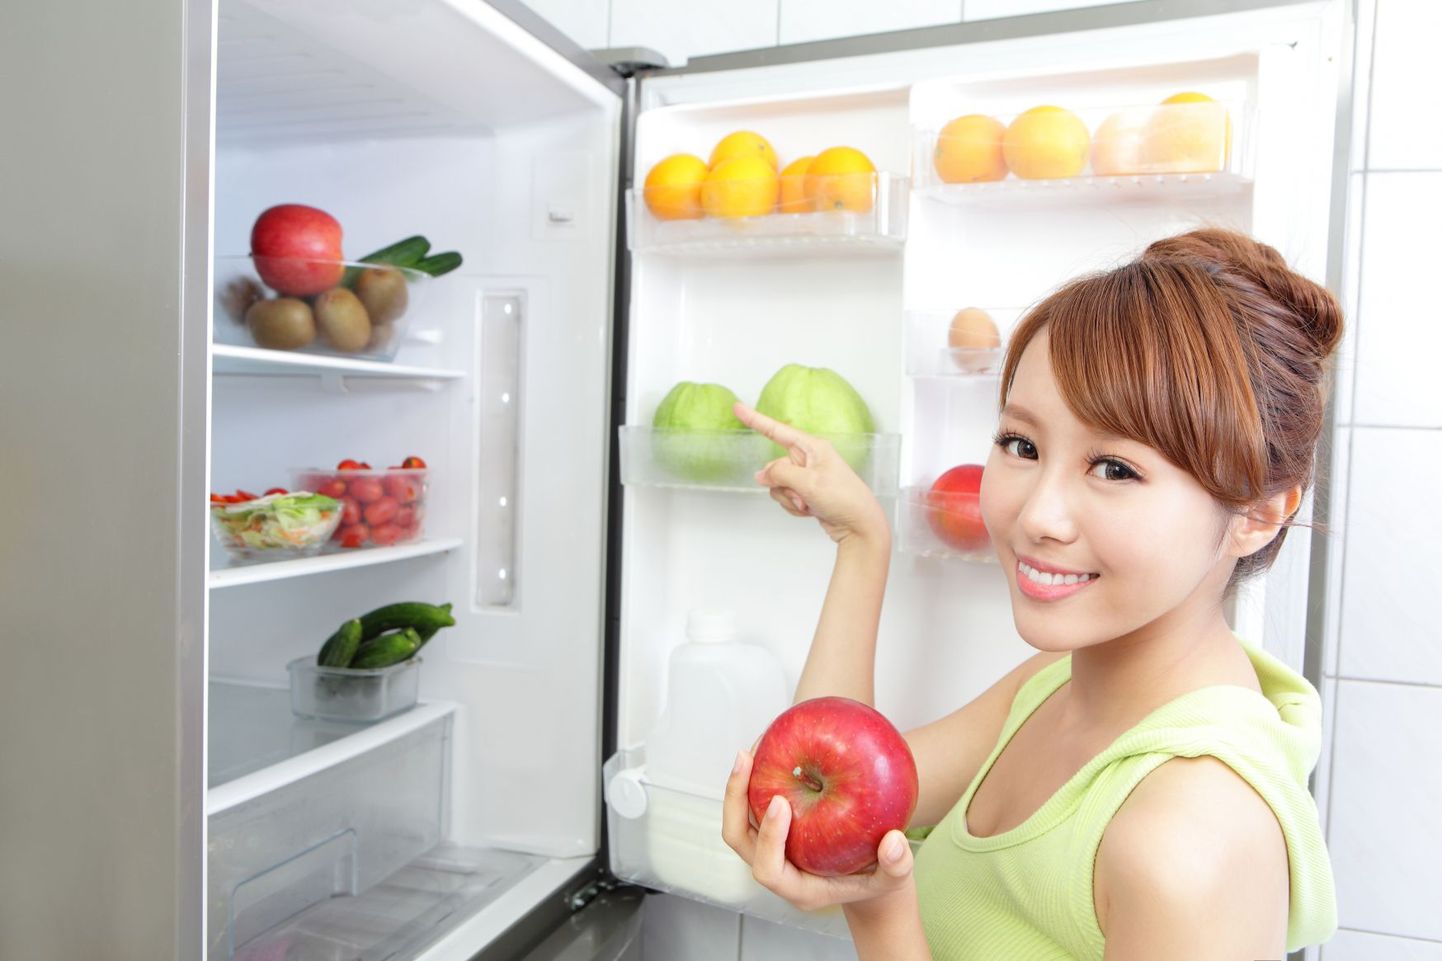 On oluline paigutada toidud külmkappi säilivustähtaja järgi.